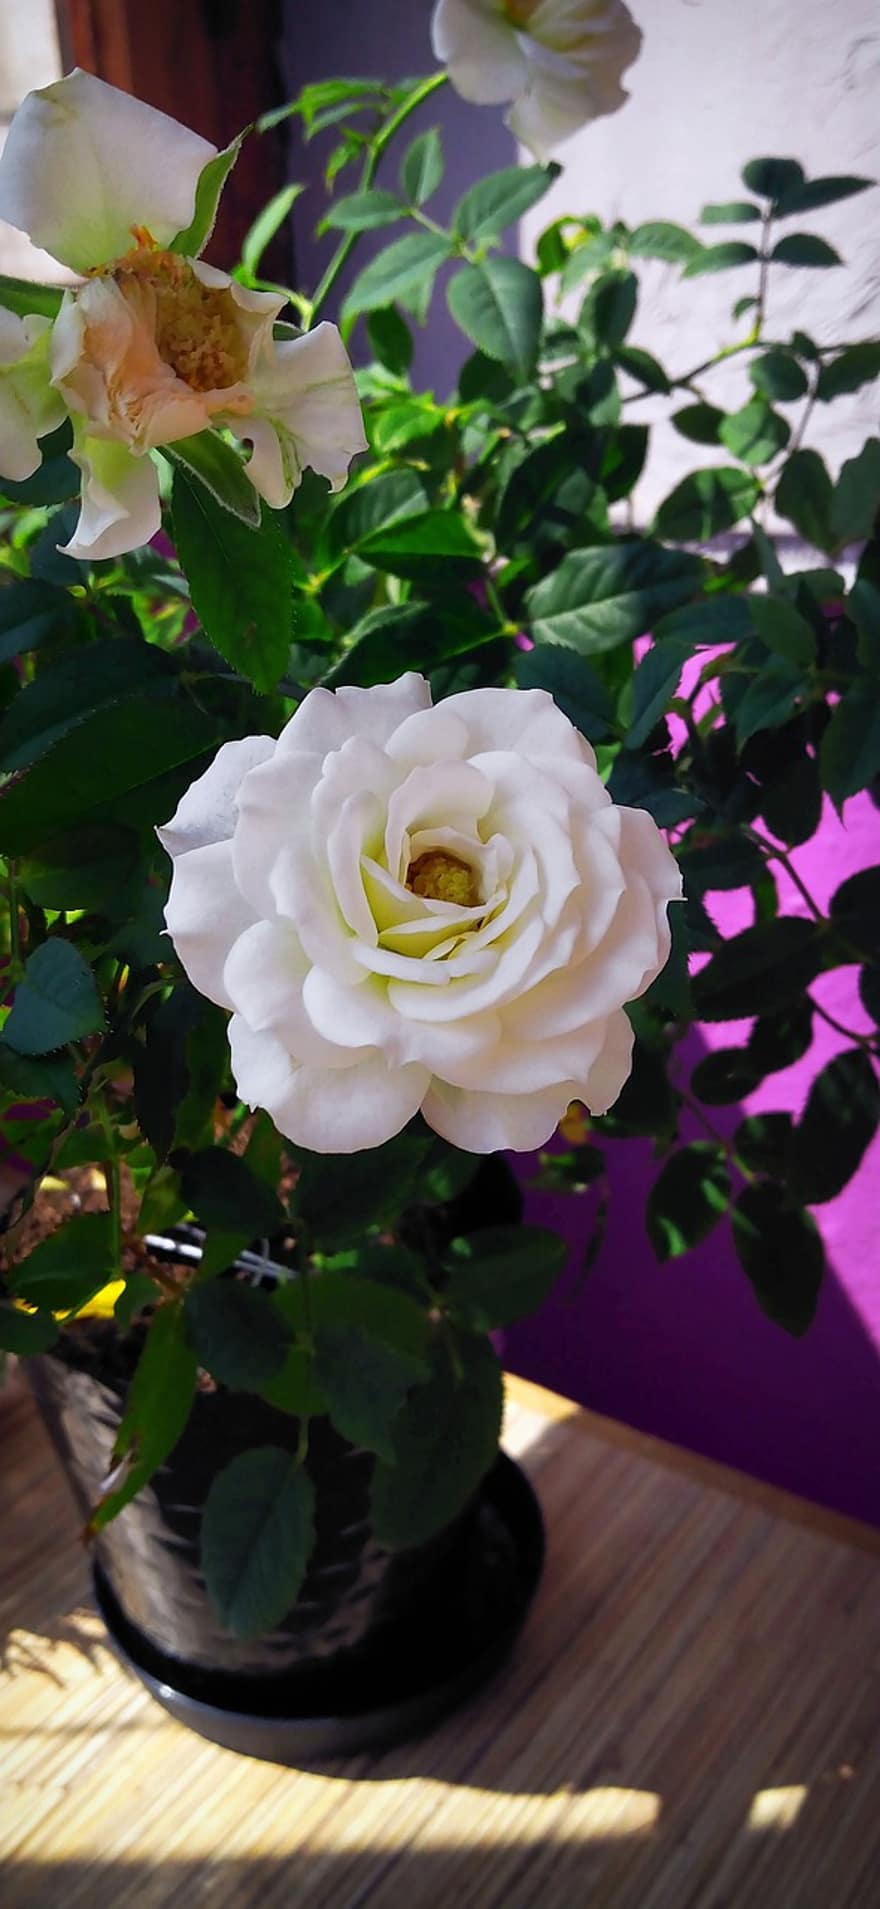 Rose, rose blanche, fleurs, blanc, pétale, fleur blanche, rosier